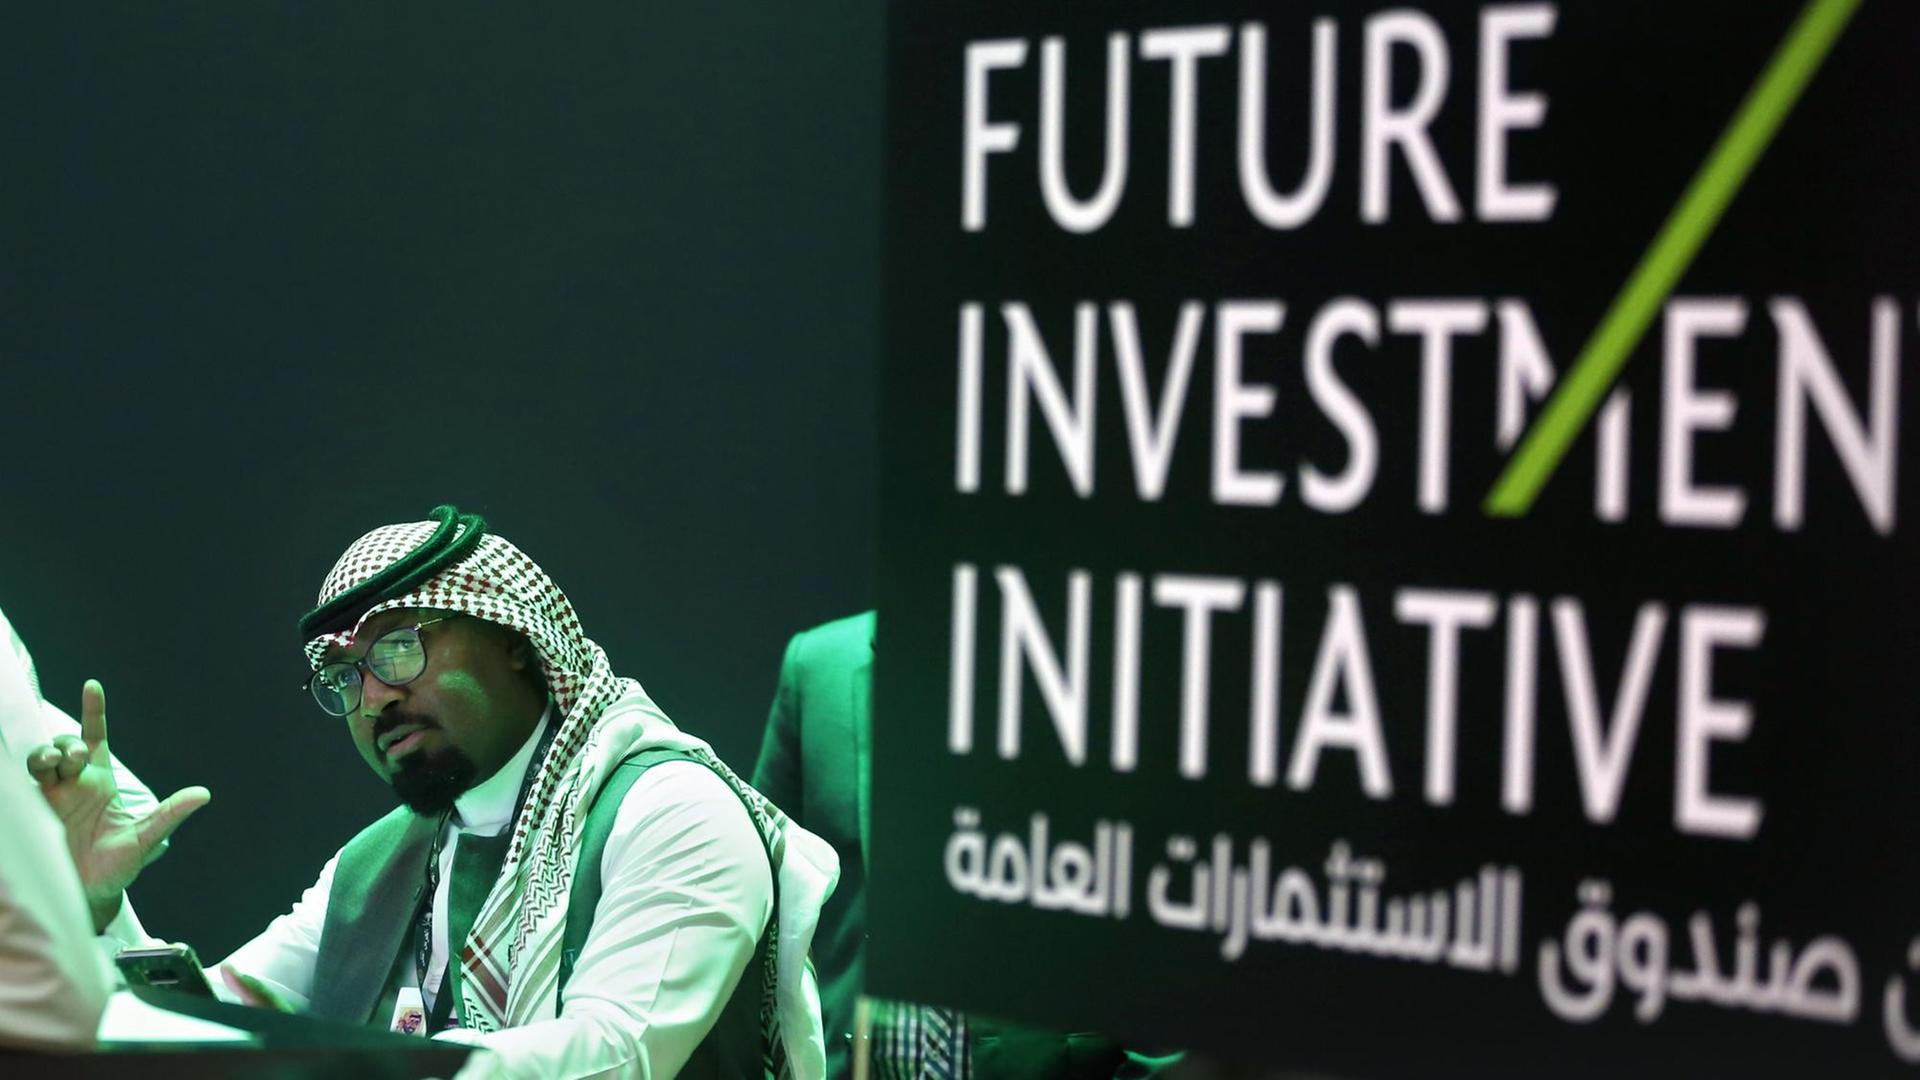 Ein Mitarbeiter der Investorenkonferenz in Riad druckt Unterlagen für die Teilnehmer aus, rechts sieht man den Schriftzug der Konferenz "Future Investment Initiative".